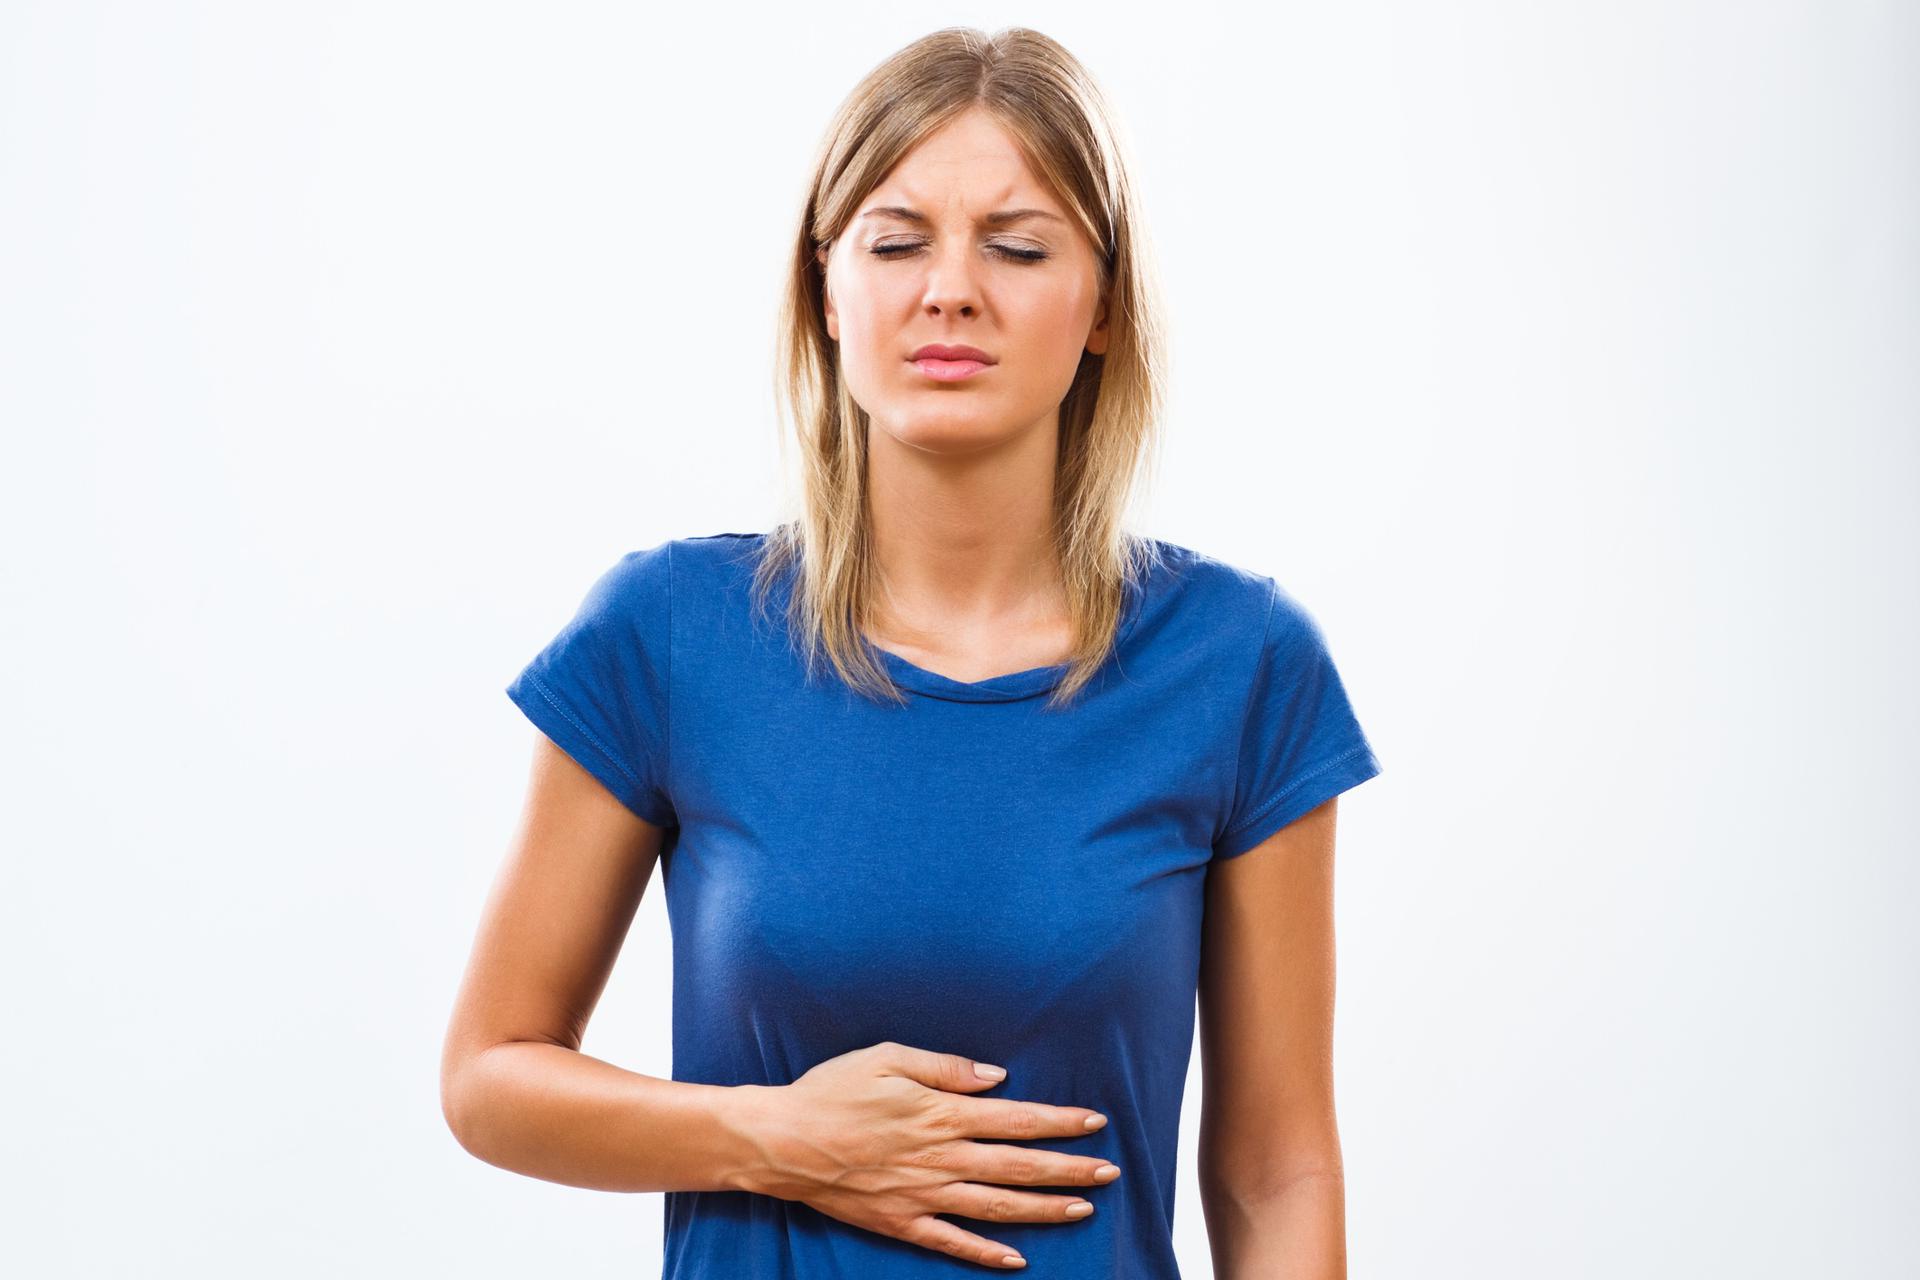 Choroba Wrzodowa Jak Uniknąć Wrzodów żołądka Poradnikzdrowiepl 3754